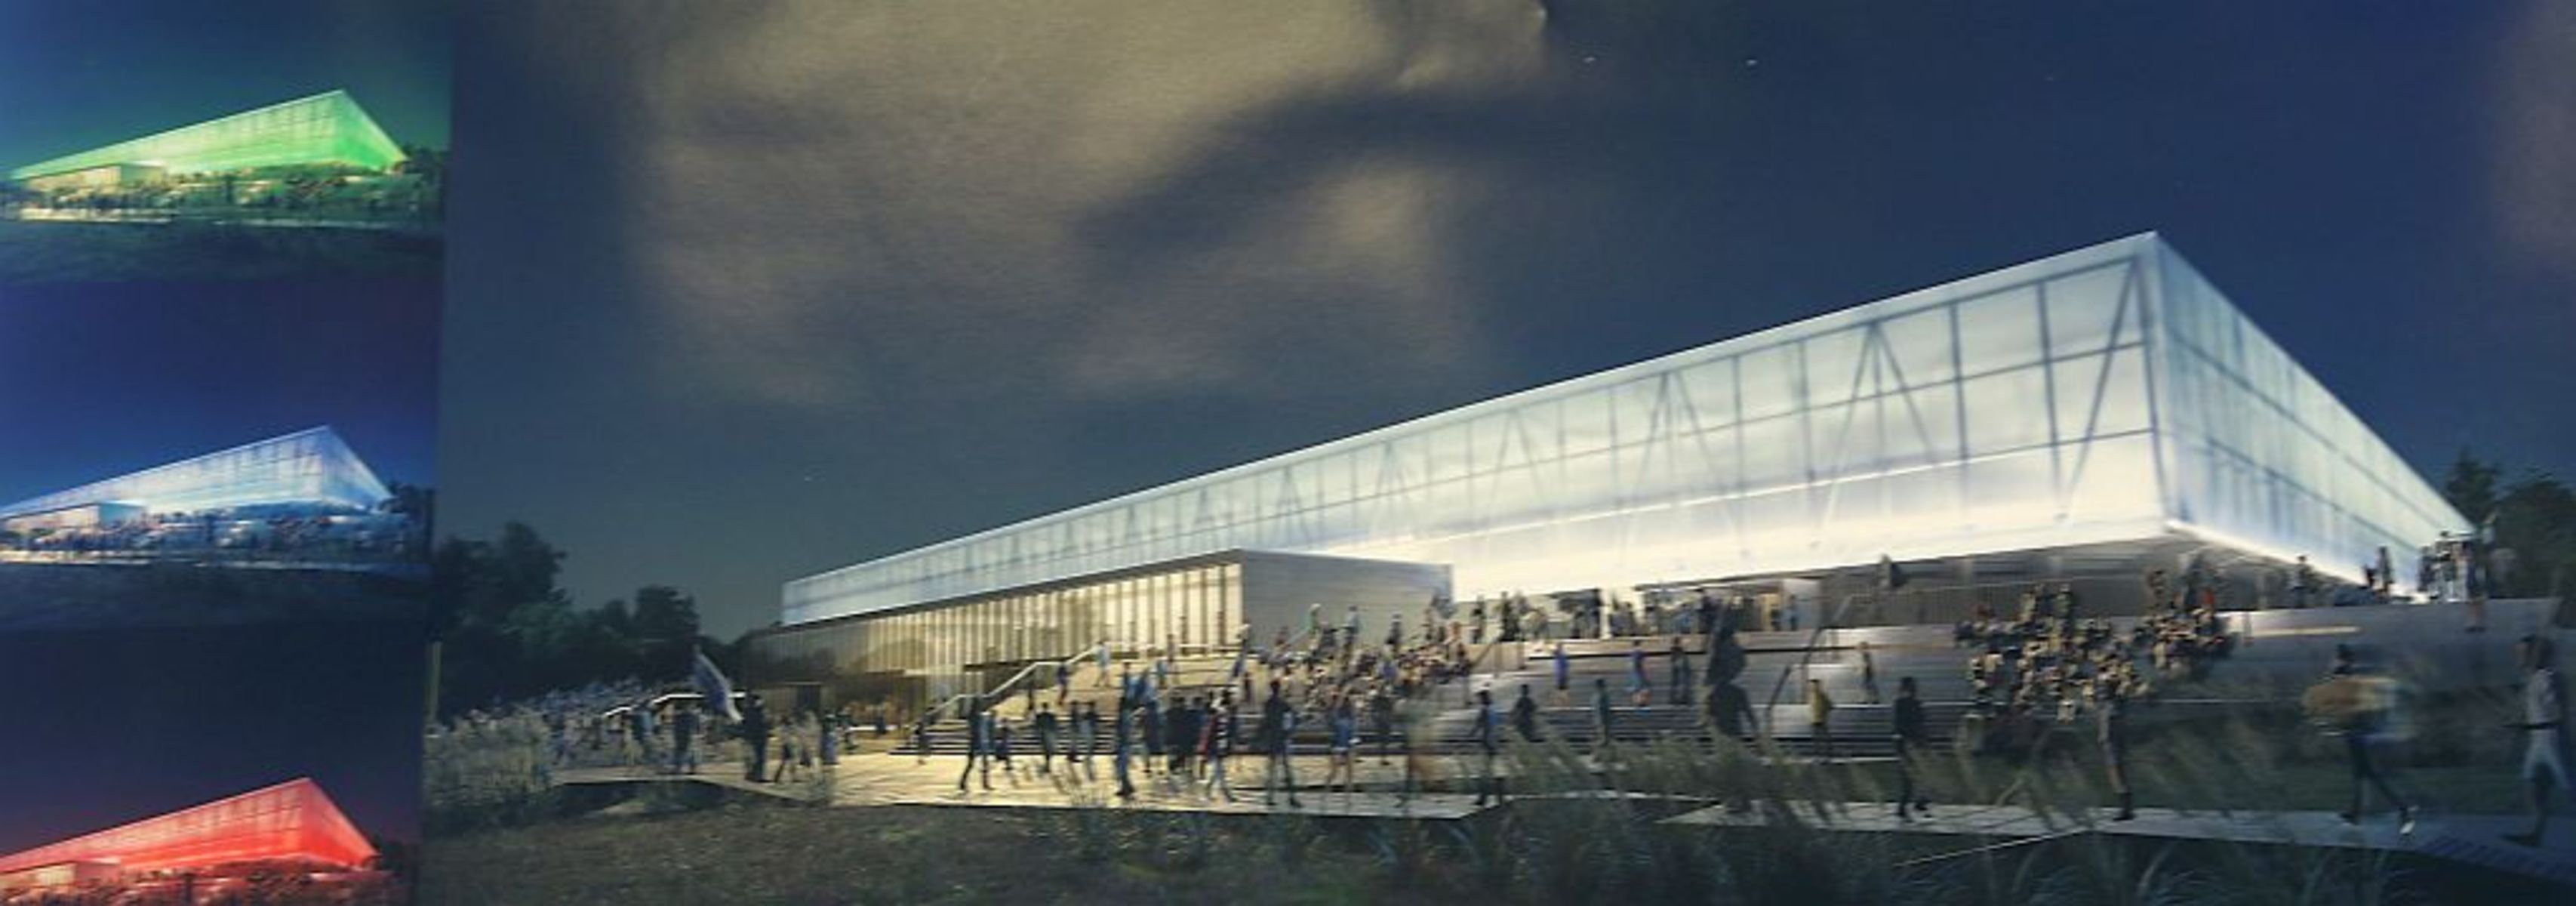 Projekt nowego stadionu w Olsztynie. Fot. Emil Marecki